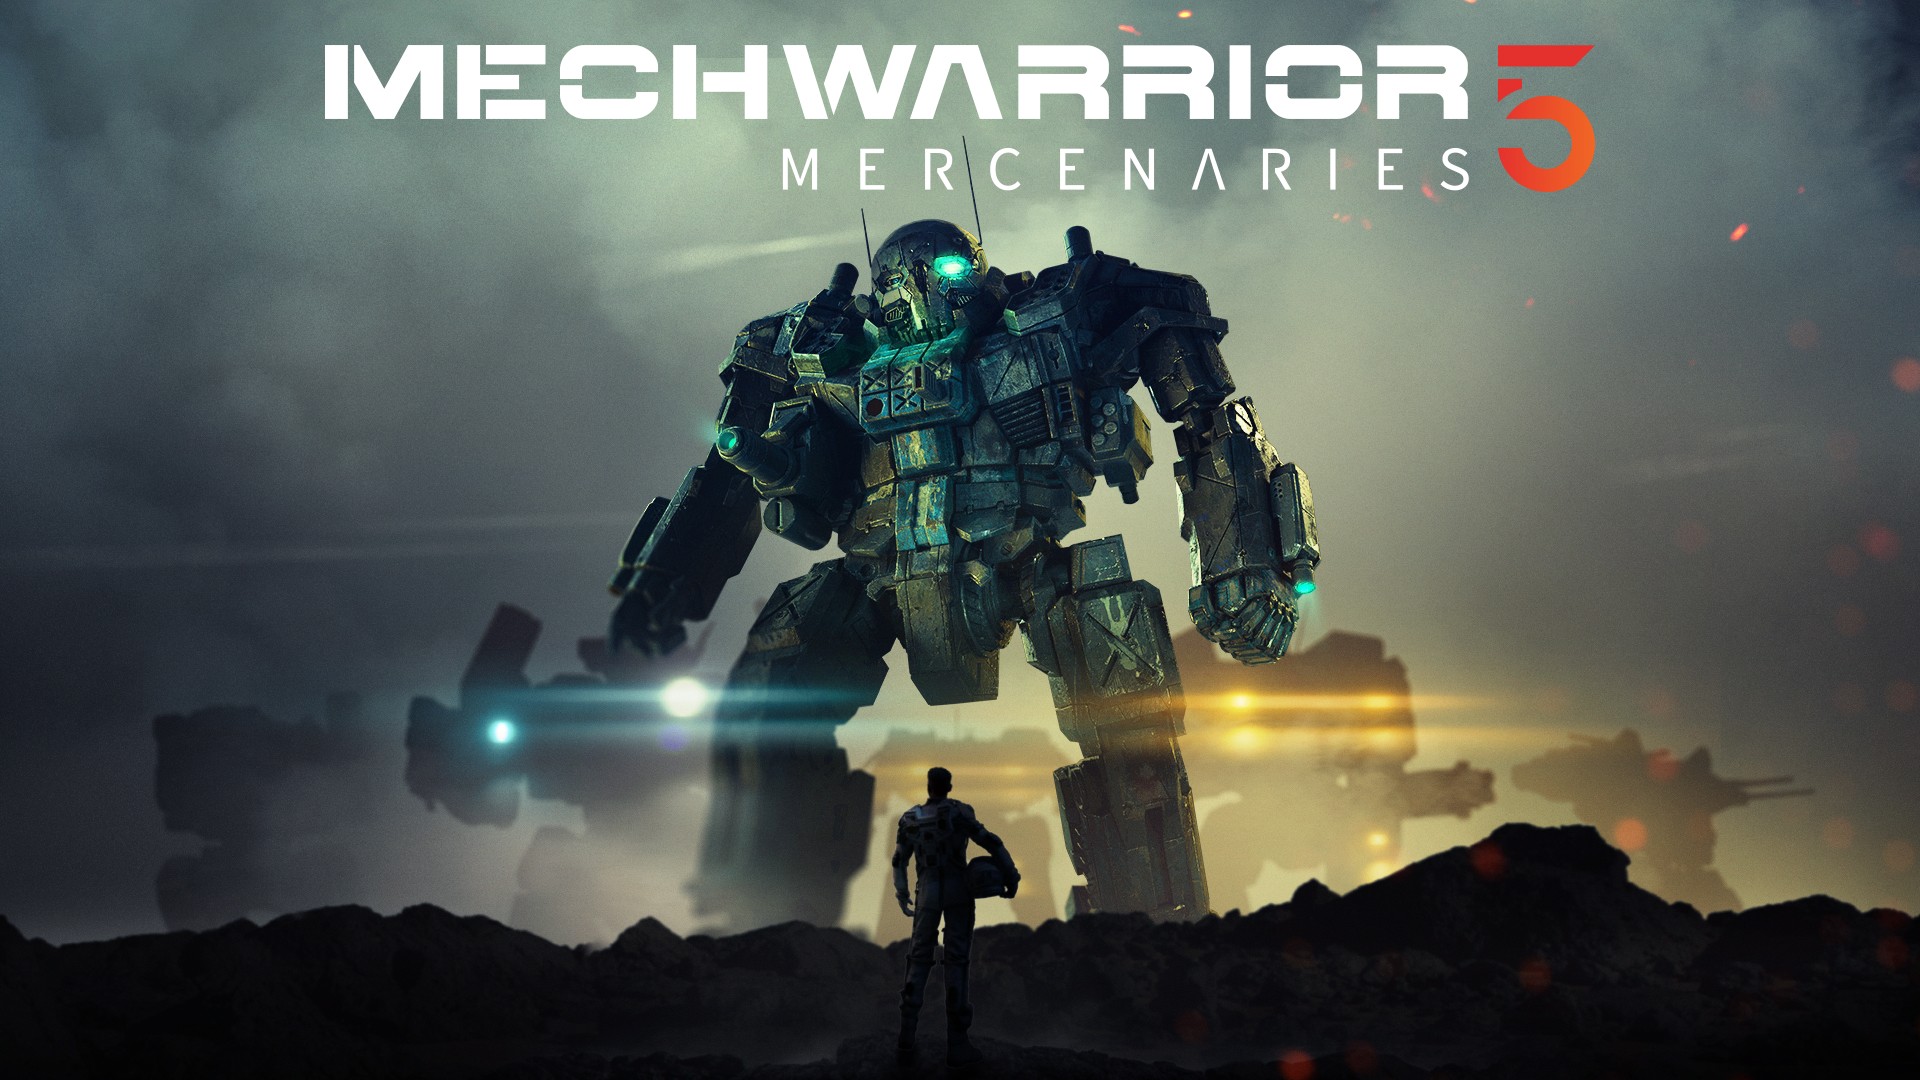 Xbox Game Pass Adds Snowrunner, MechWarrior 5: Mercenaries, More